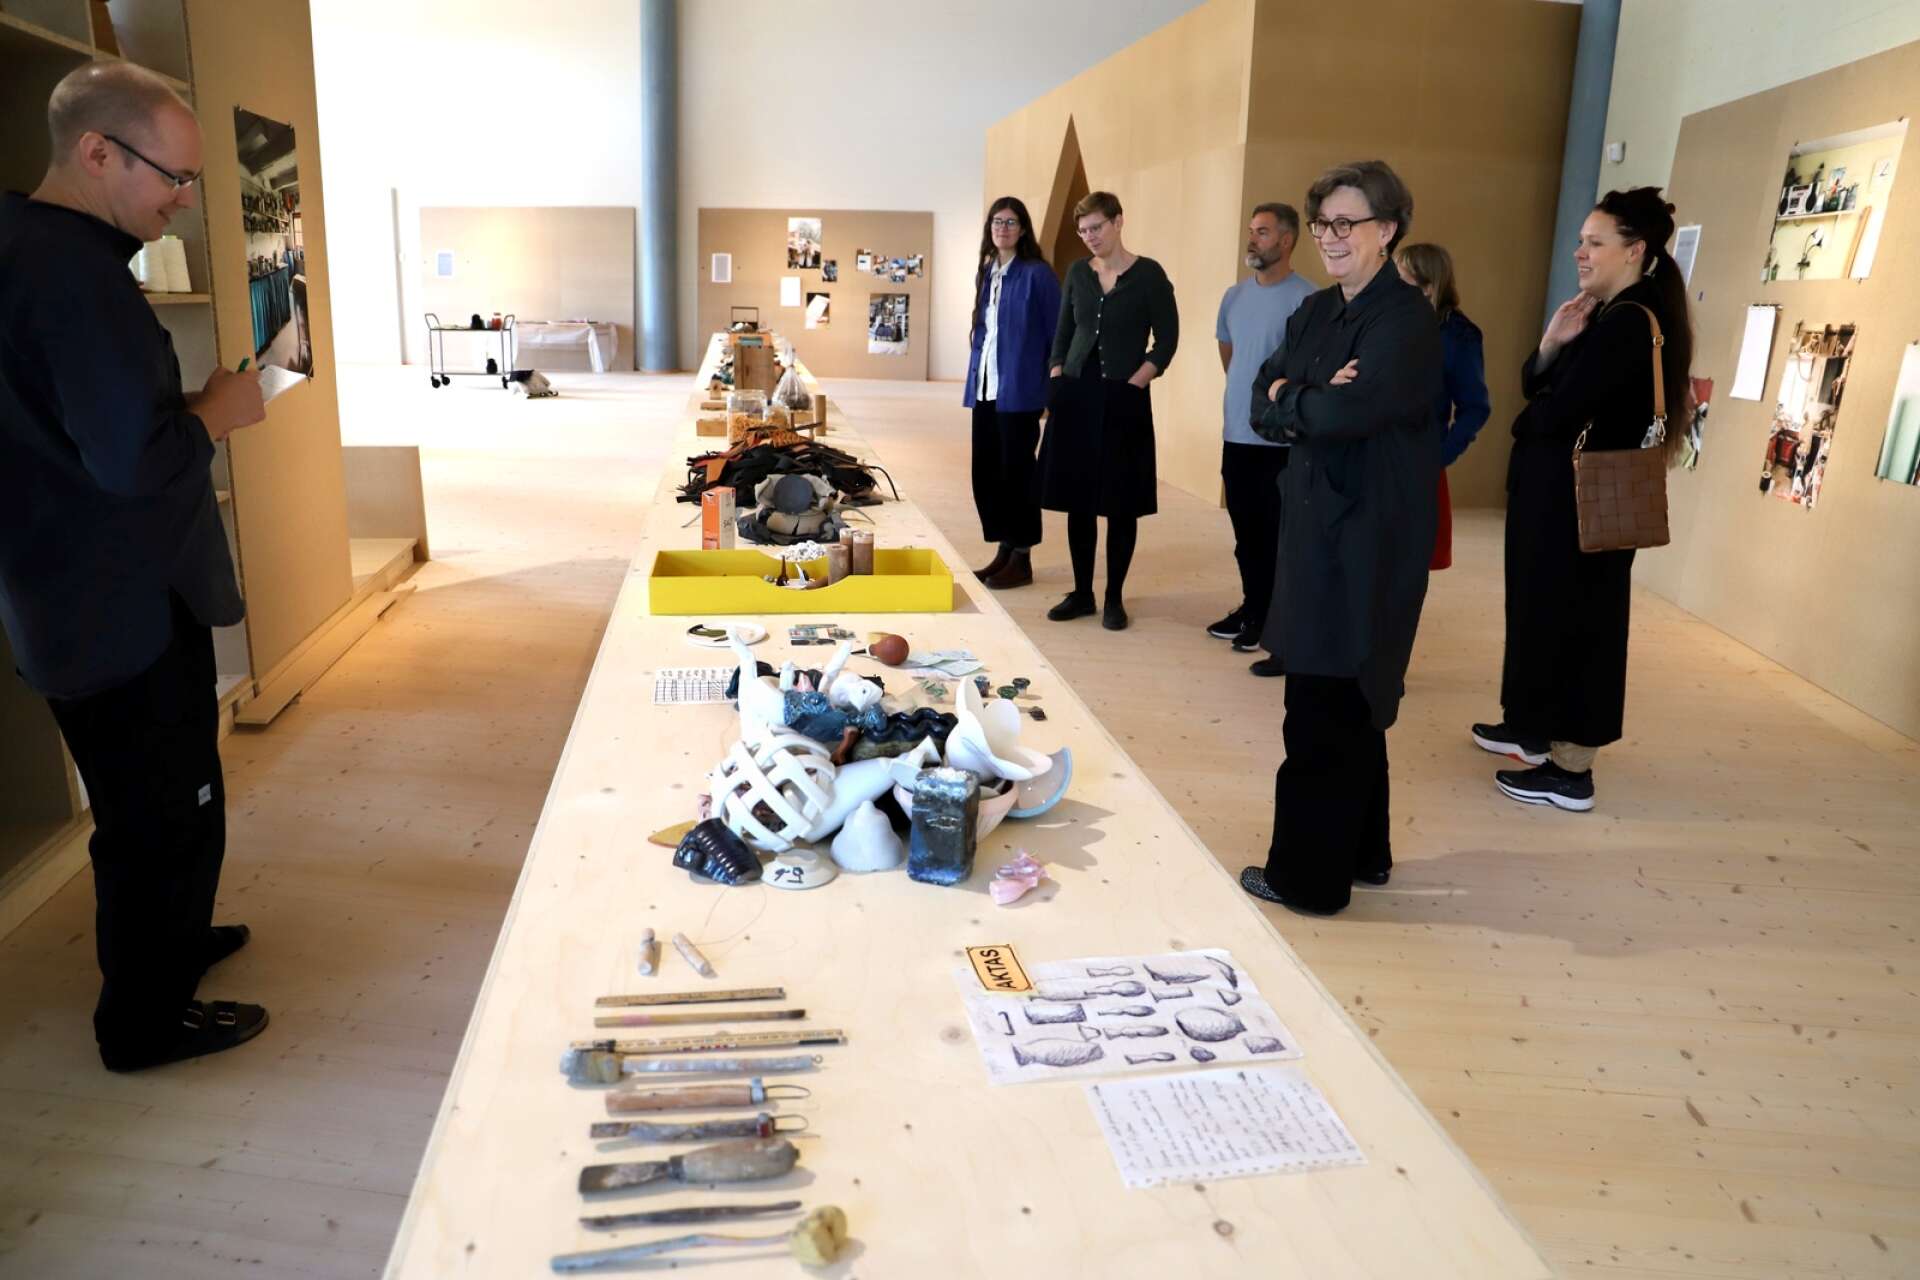 En viktig del av utställningen är ett drygt 16 meter långt bord. Där finns ”skrofs”, rester, råmaterial och andra lösa delar från hantverkarnas verkstäder.